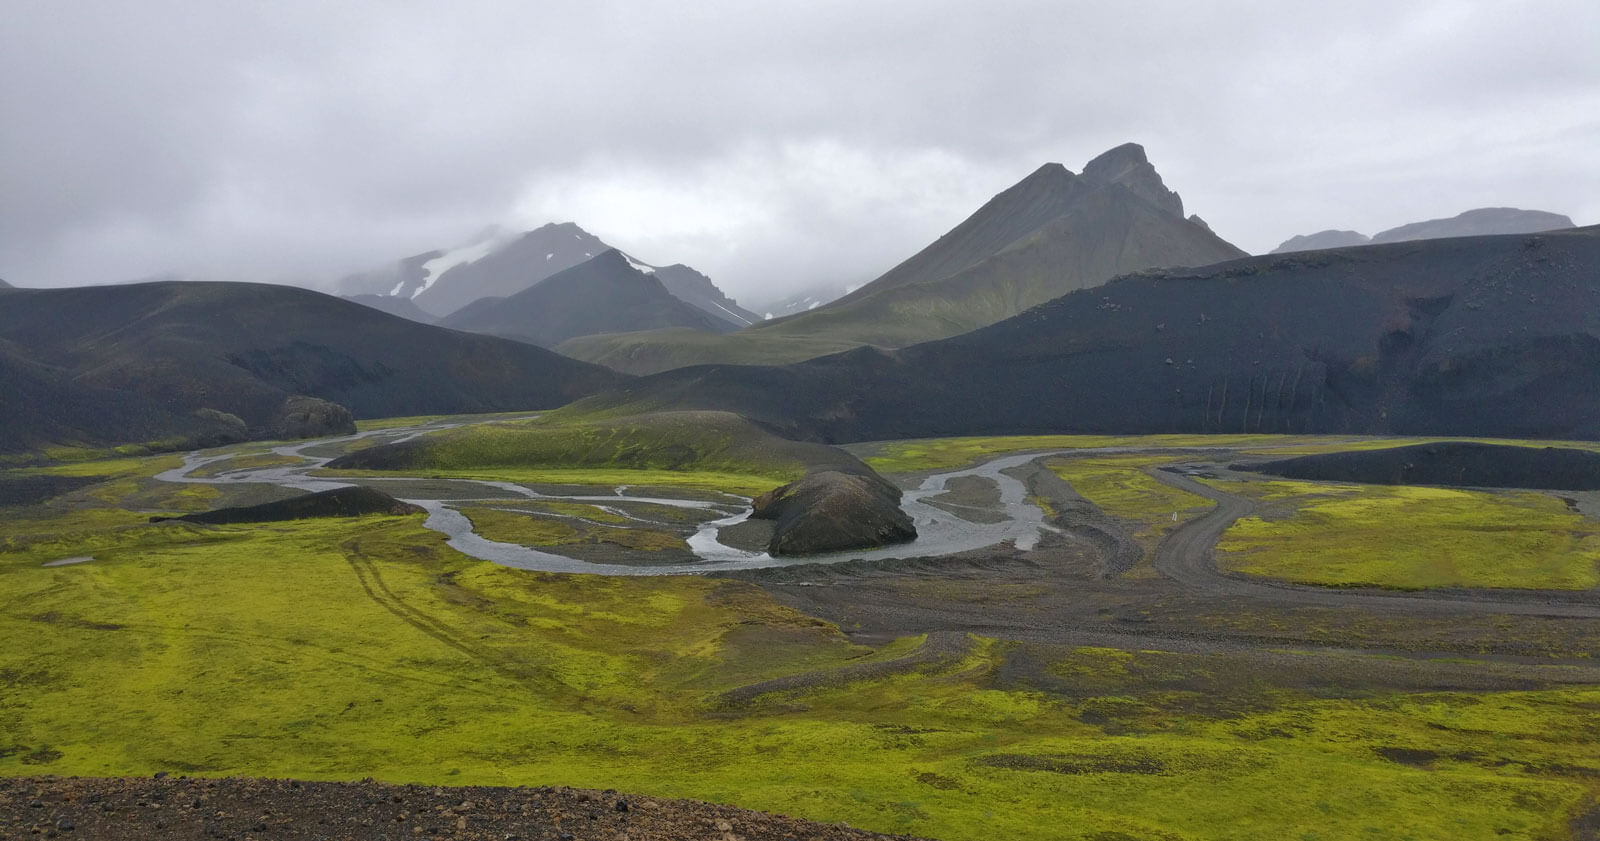 Les hautes terres d'Islande, avec le vert de la mousse de la plaine, et les montagnes noires perdues dans les nuages.